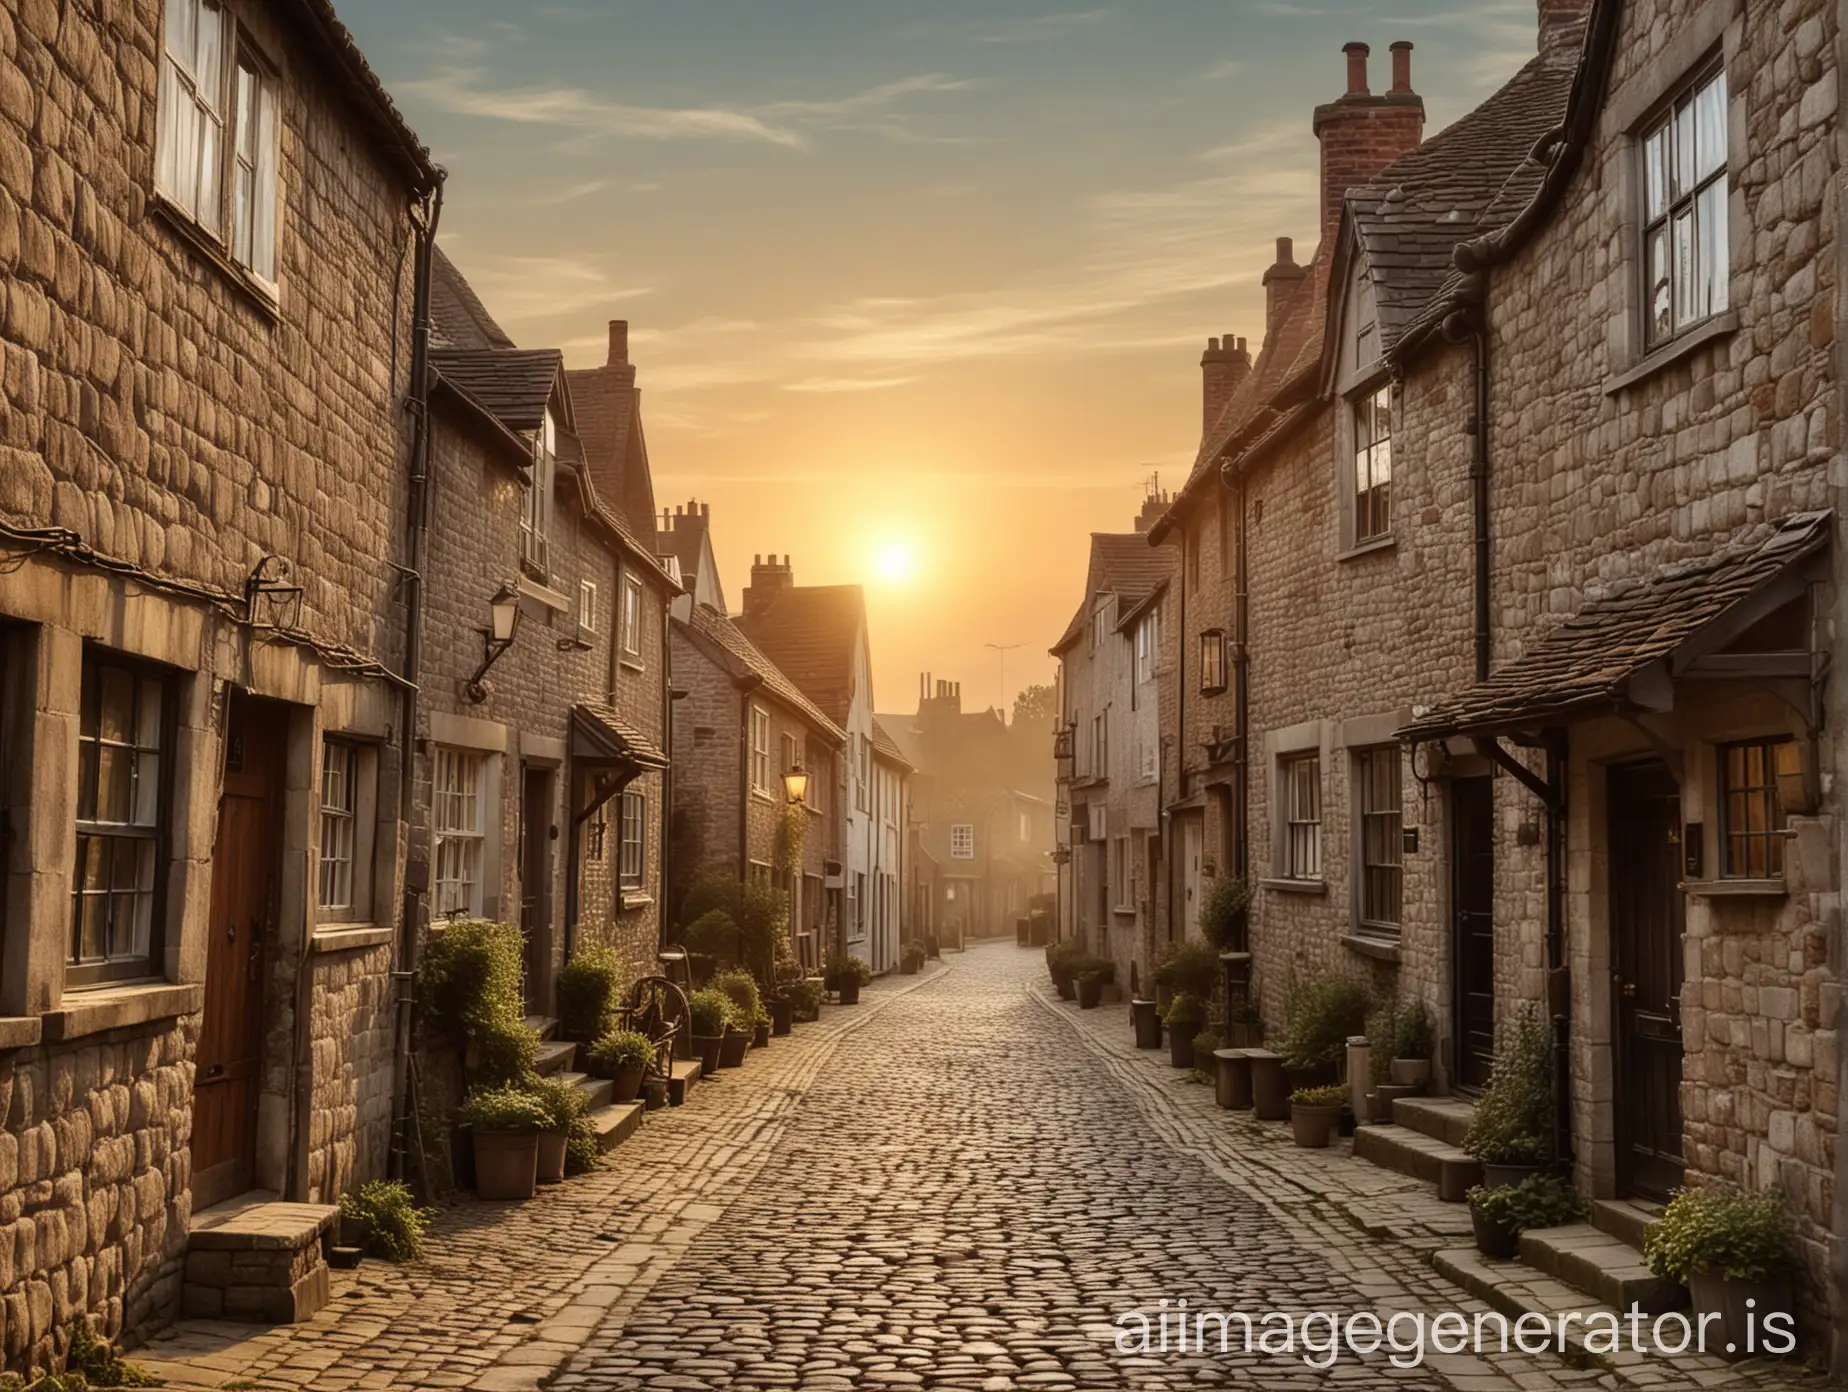 old cobblestone street sunrise English village vintage


